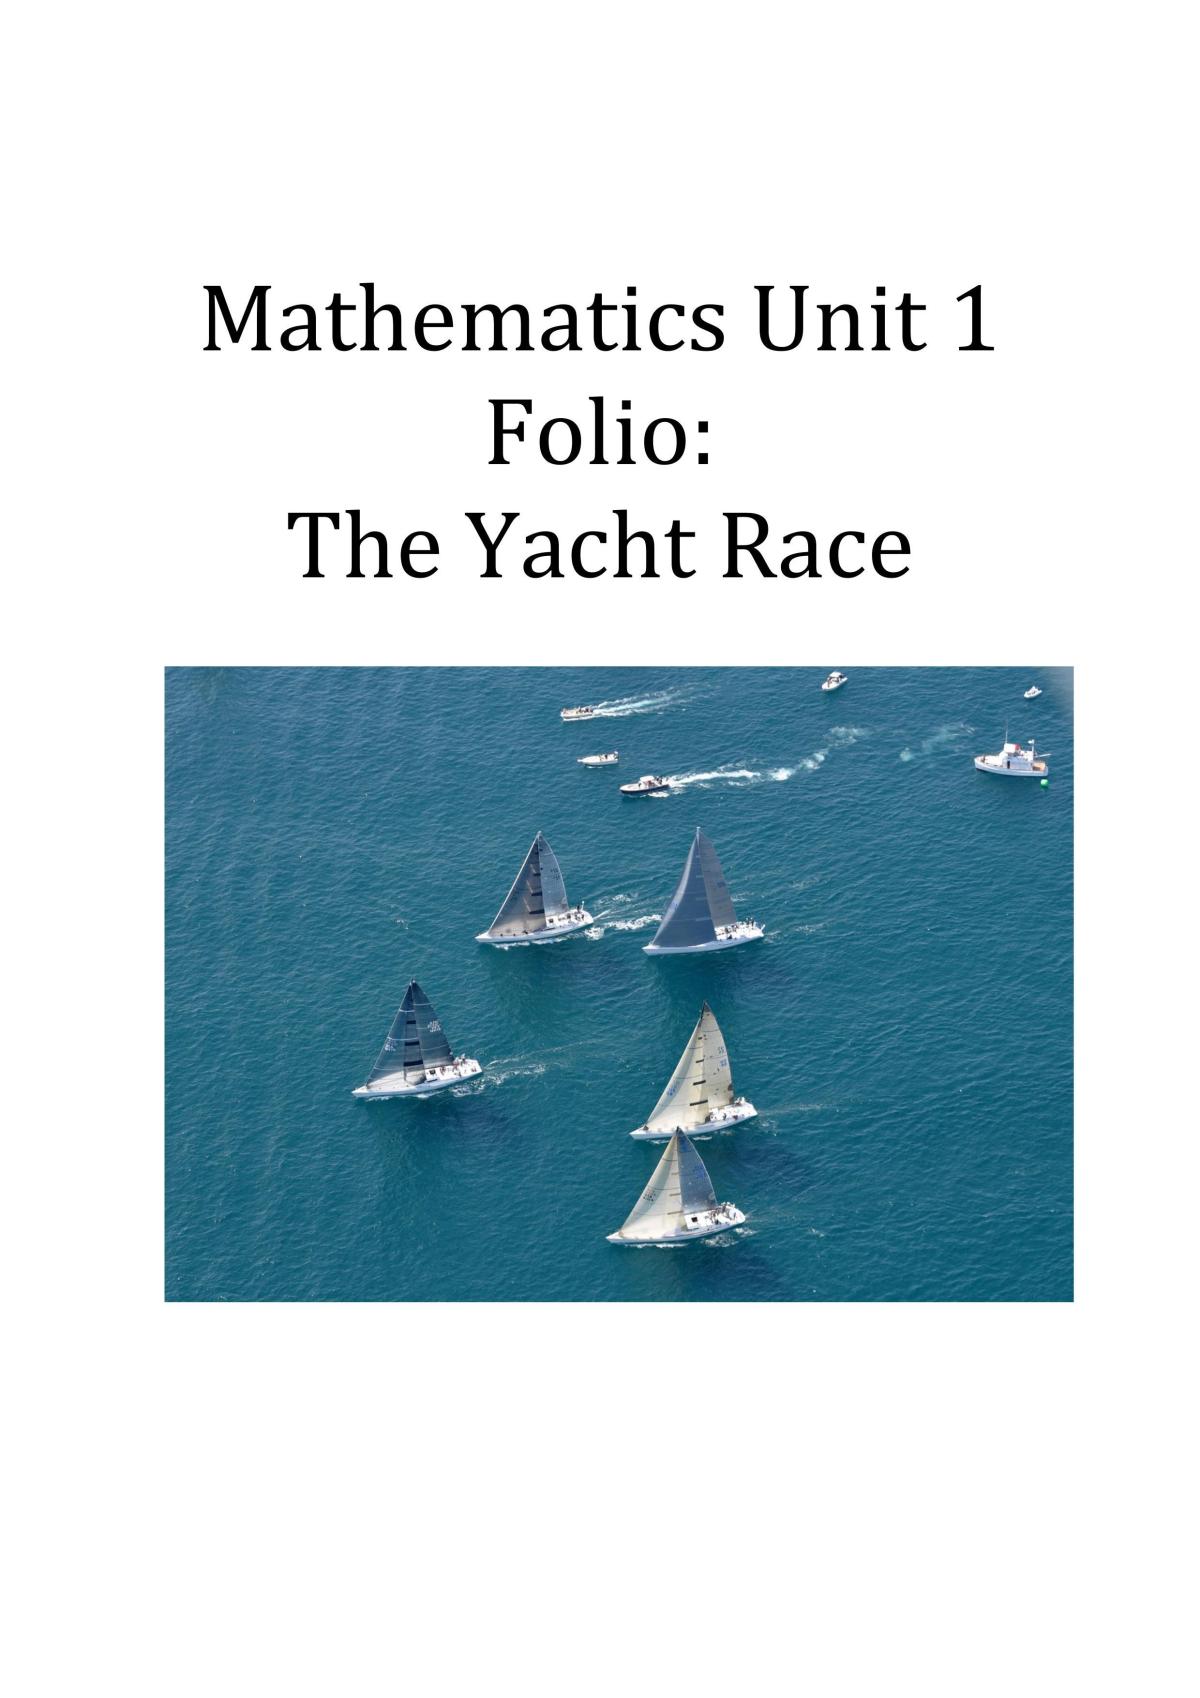 yacht math is fun